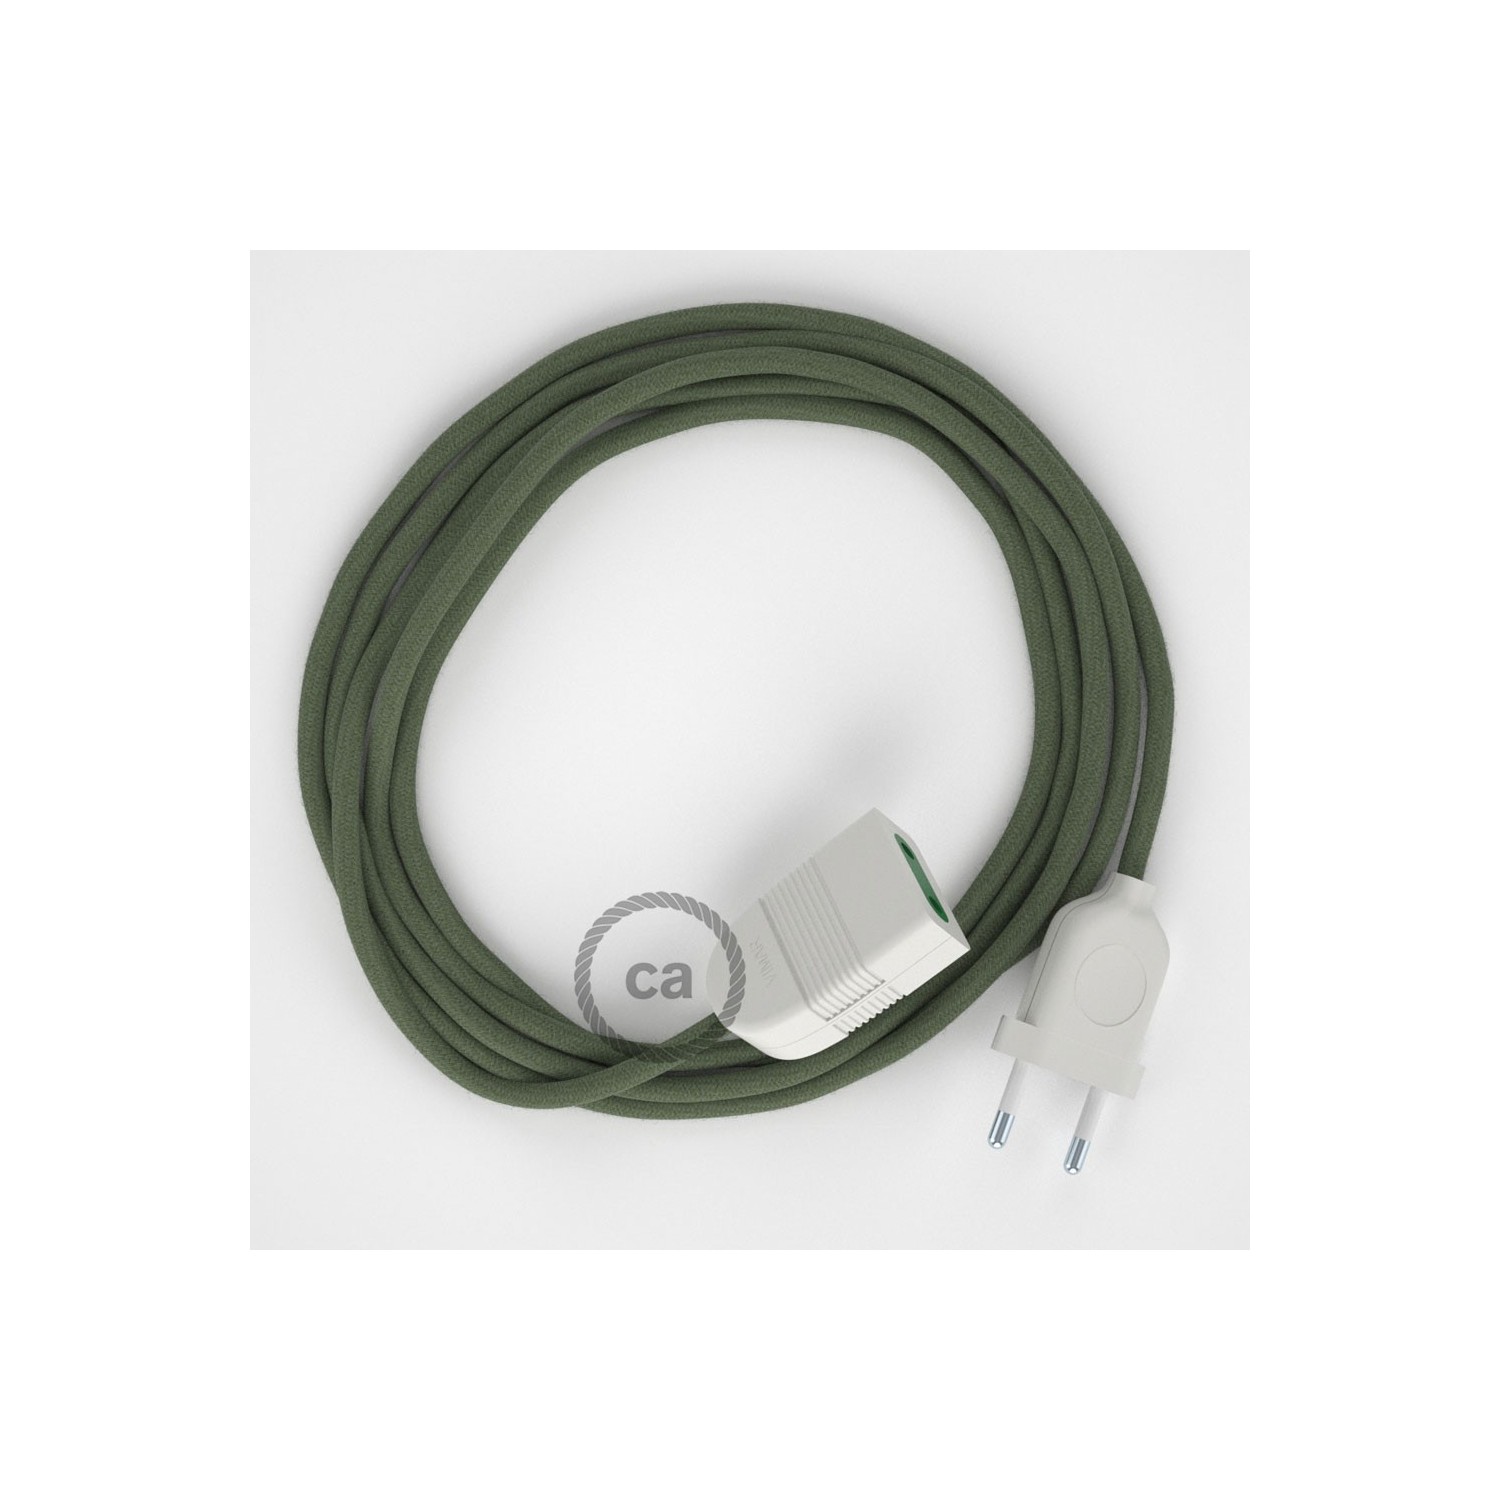 Podaljševalni kabel za napajanje (2P 10A) sivo-zelen bombaž RC63 - Made in Italy